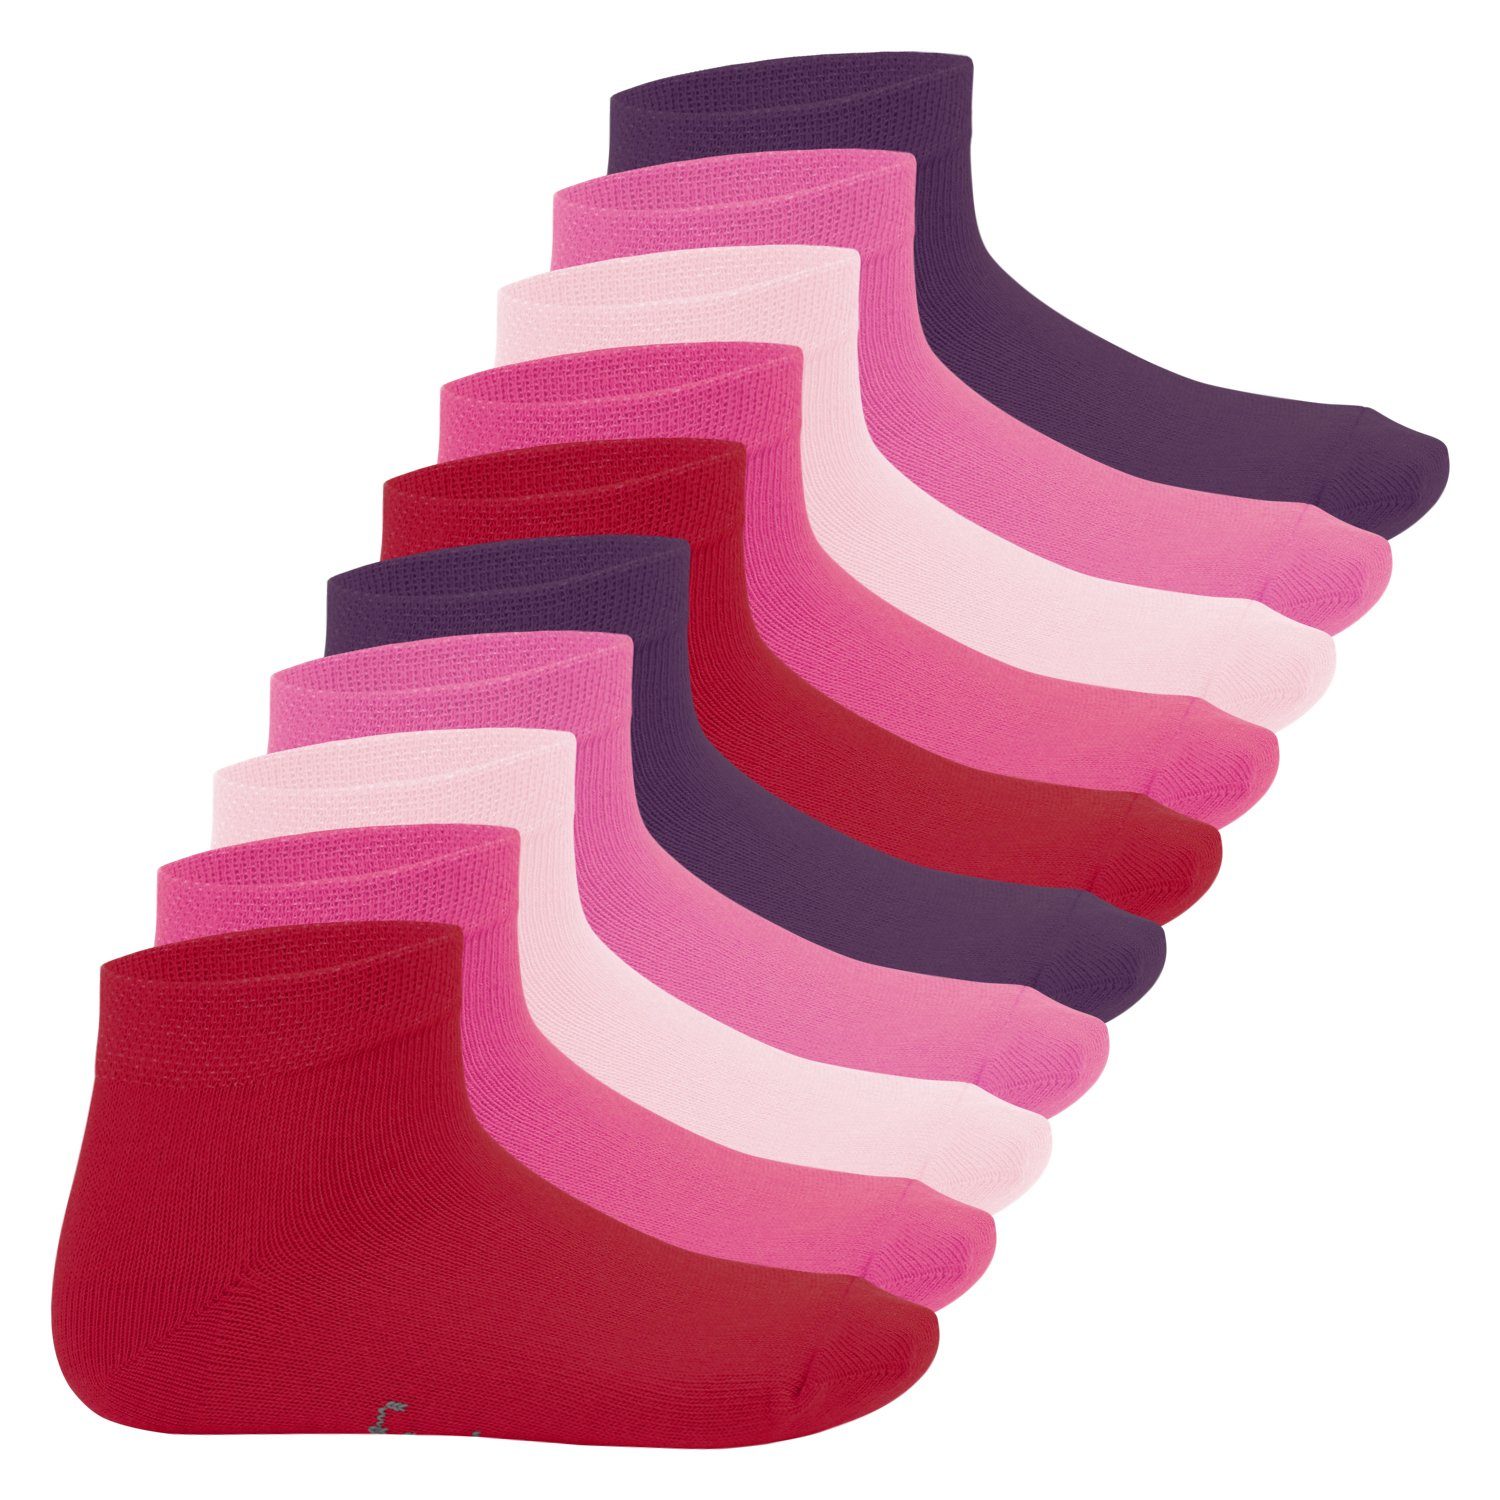 Footstar Kurzsocken Sneak it! Kinder Kurzschaft Paar) Socken (10 Jungen Mädchen & Berryfarben